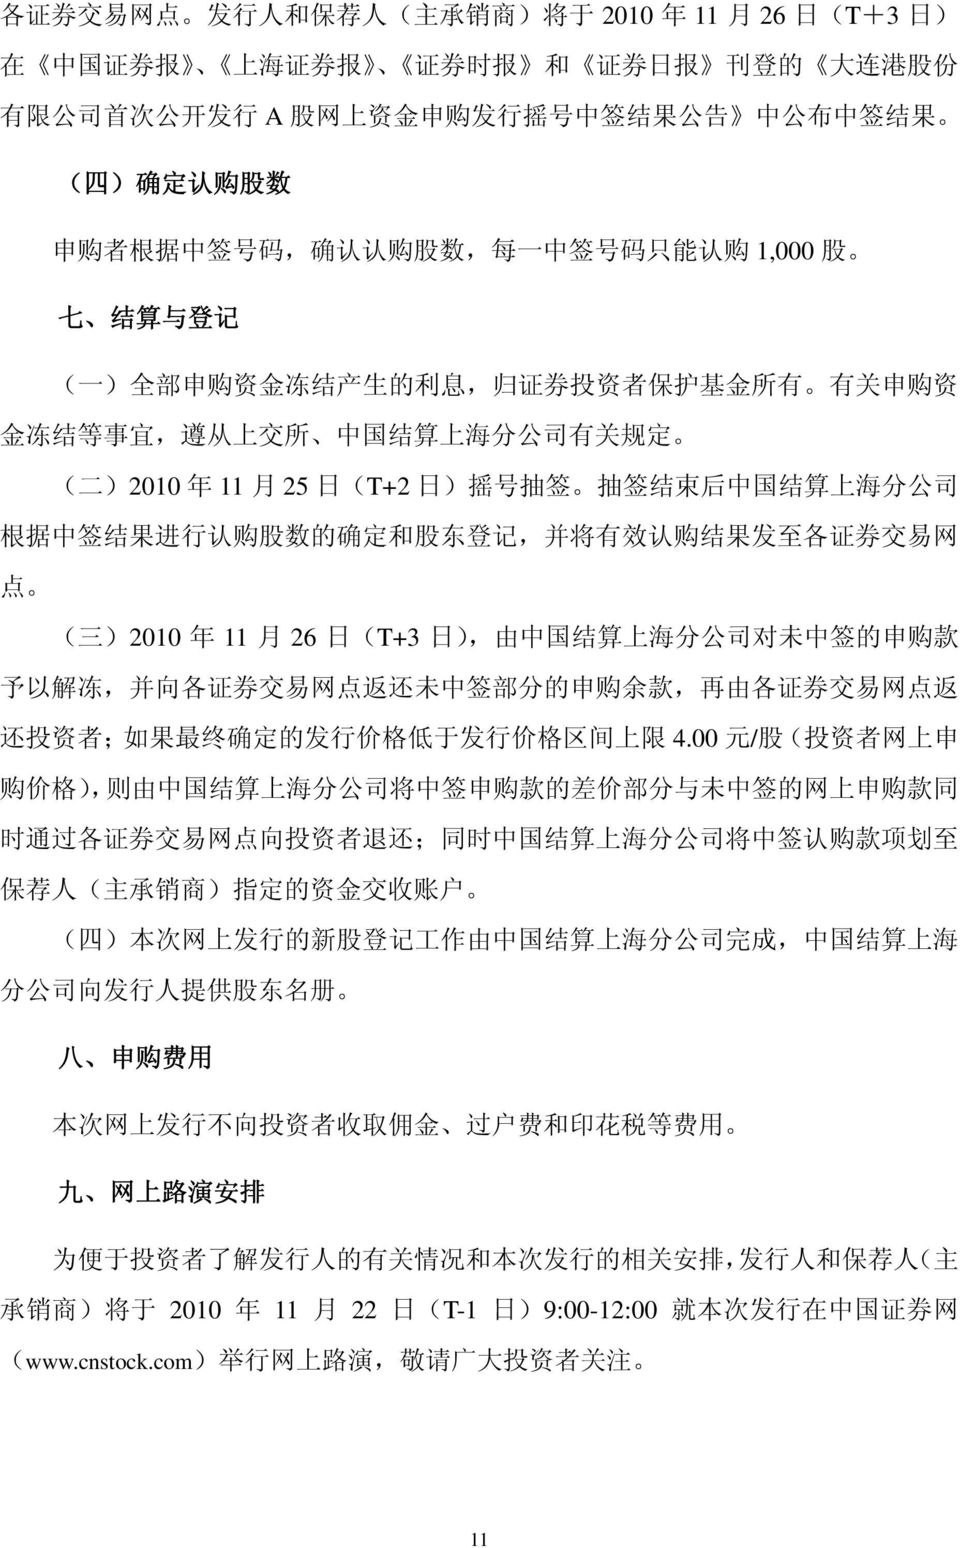 定 ( 二 )2010 年 11 月 25 日 (T+2 日 ) 摇 号 抽 签 抽 签 结 束 后 中 国 结 算 上 海 分 公 司 根 据 中 签 结 果 进 行 认 购 股 数 的 确 定 和 股 东 登 记, 并 将 有 效 认 购 结 果 发 至 各 证 券 交 易 网 点 ( 三 )2010 年 11 月 26 日 (T+3 日 ), 由 中 国 结 算 上 海 分 公 司 对 未